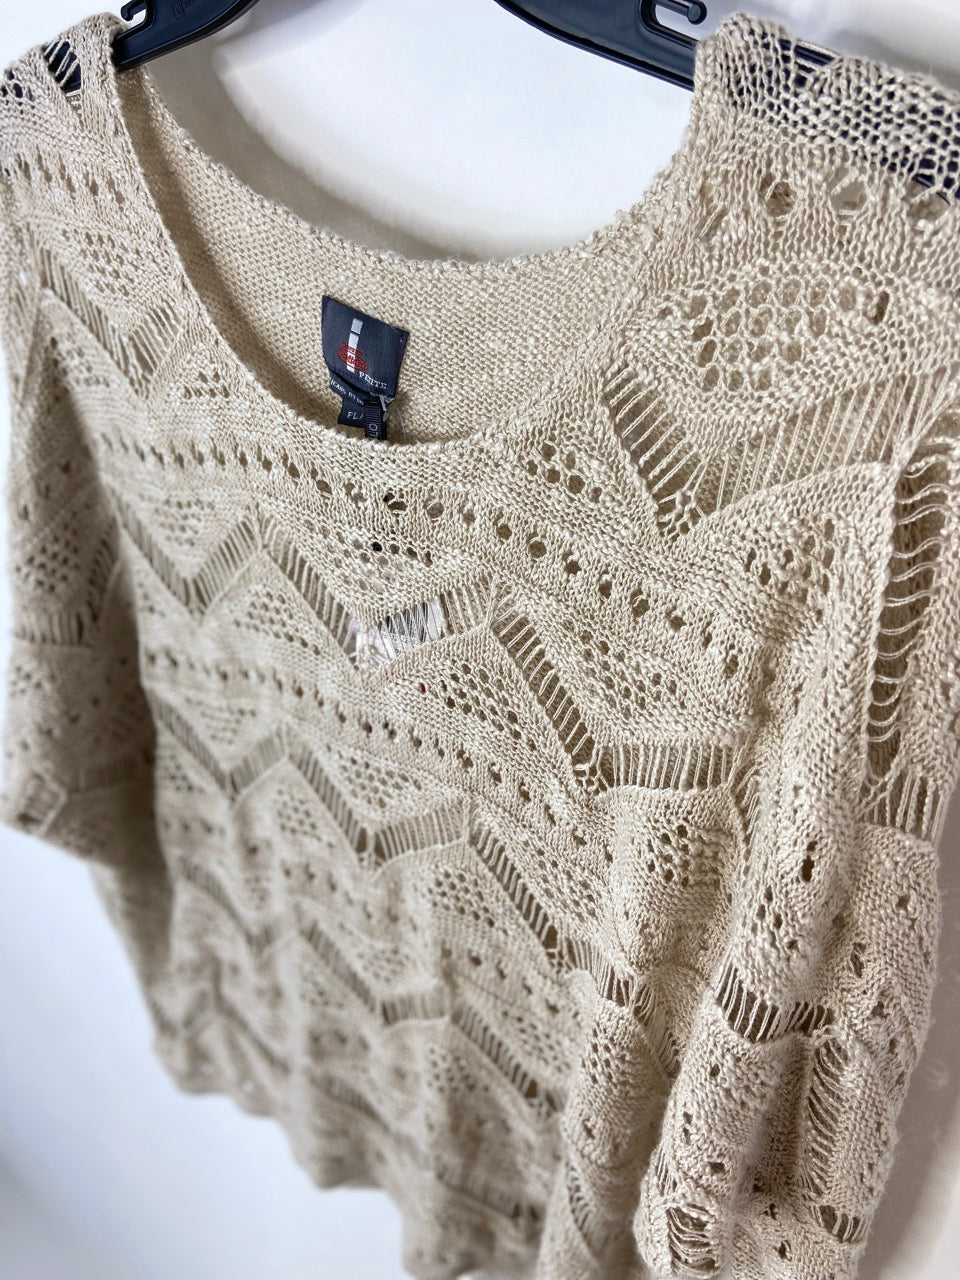 NWT- Beige Knit Sweater- Petite L